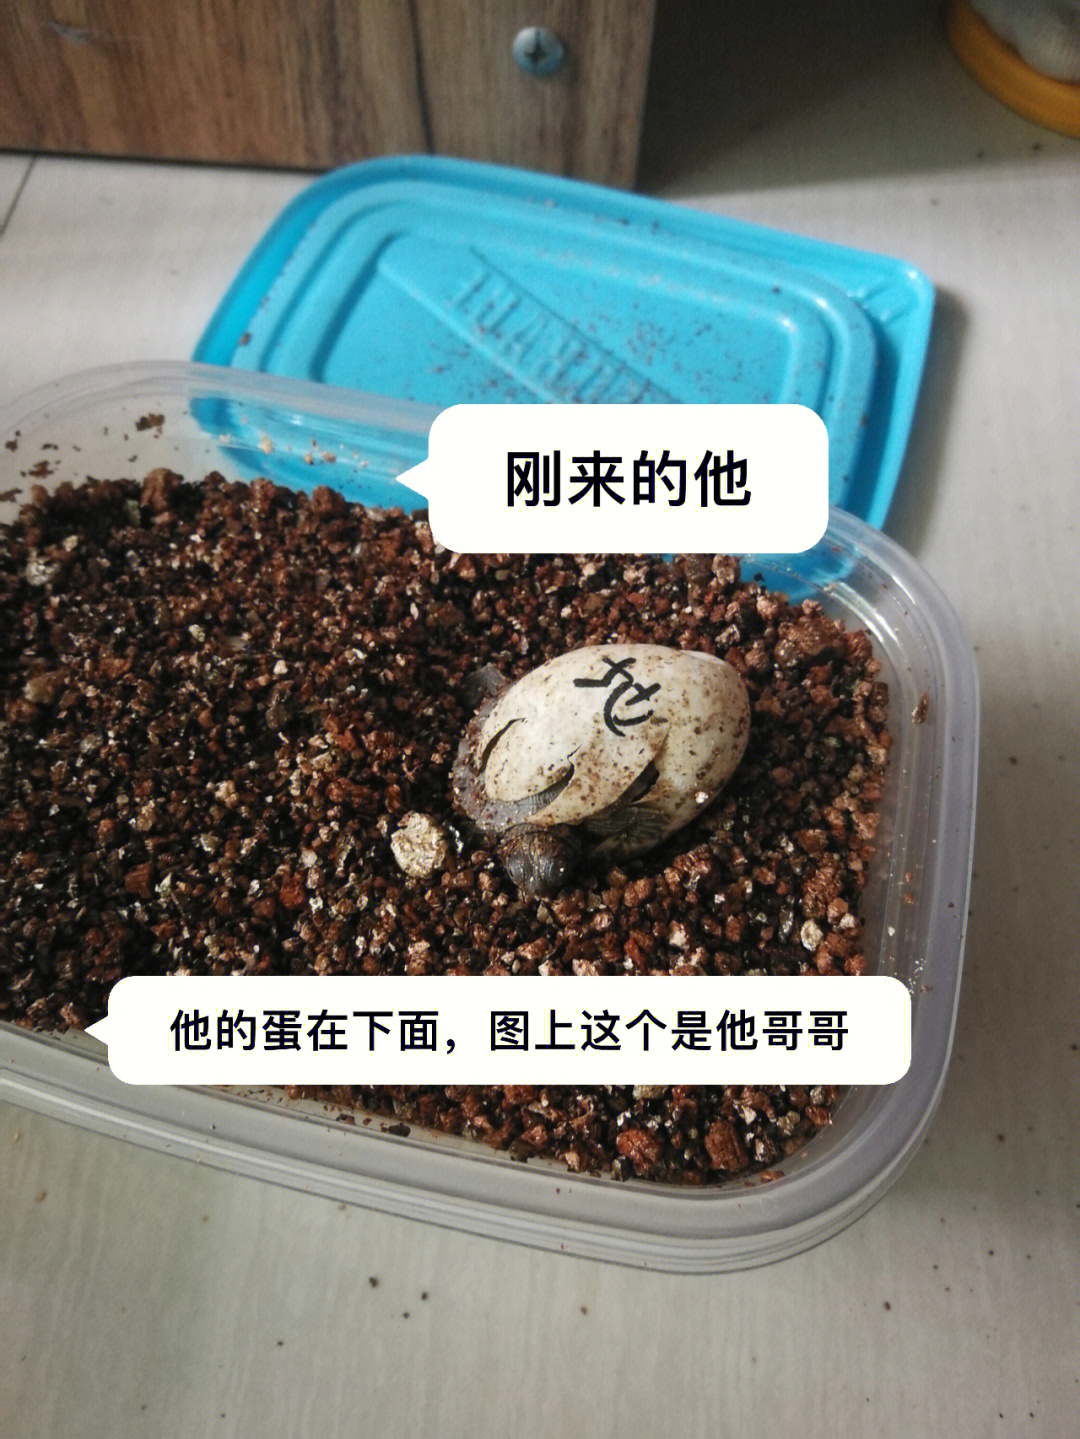 当初心血来潮买的乌龟蛋,没想到居然活下来了,而且还特别能吃,两年半